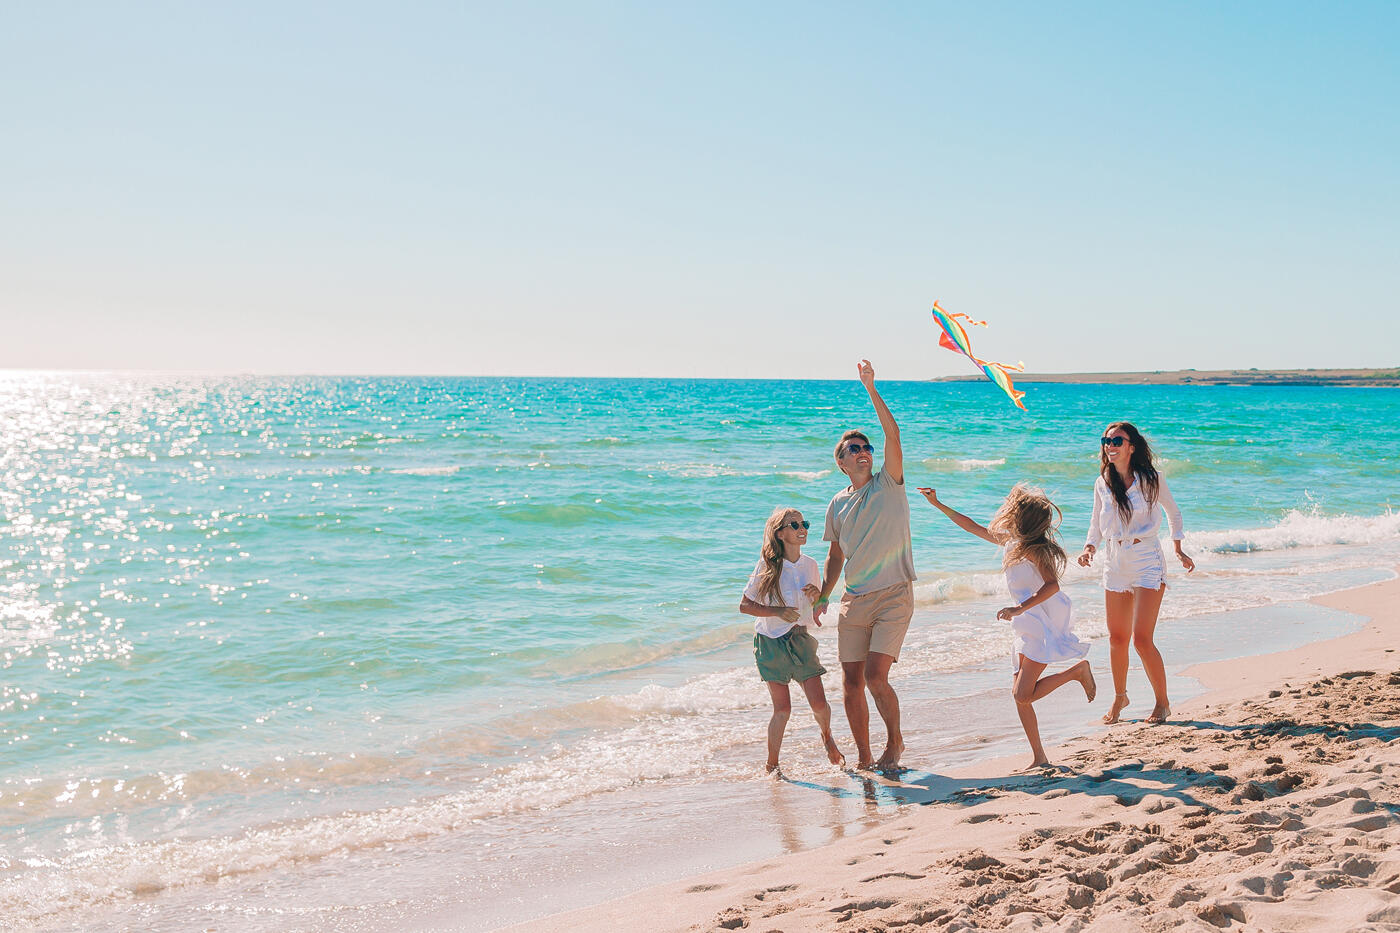 Familia jugando con una cometa en una playa soleada, con el mar turquesa de fondo durante sus vacaciones.